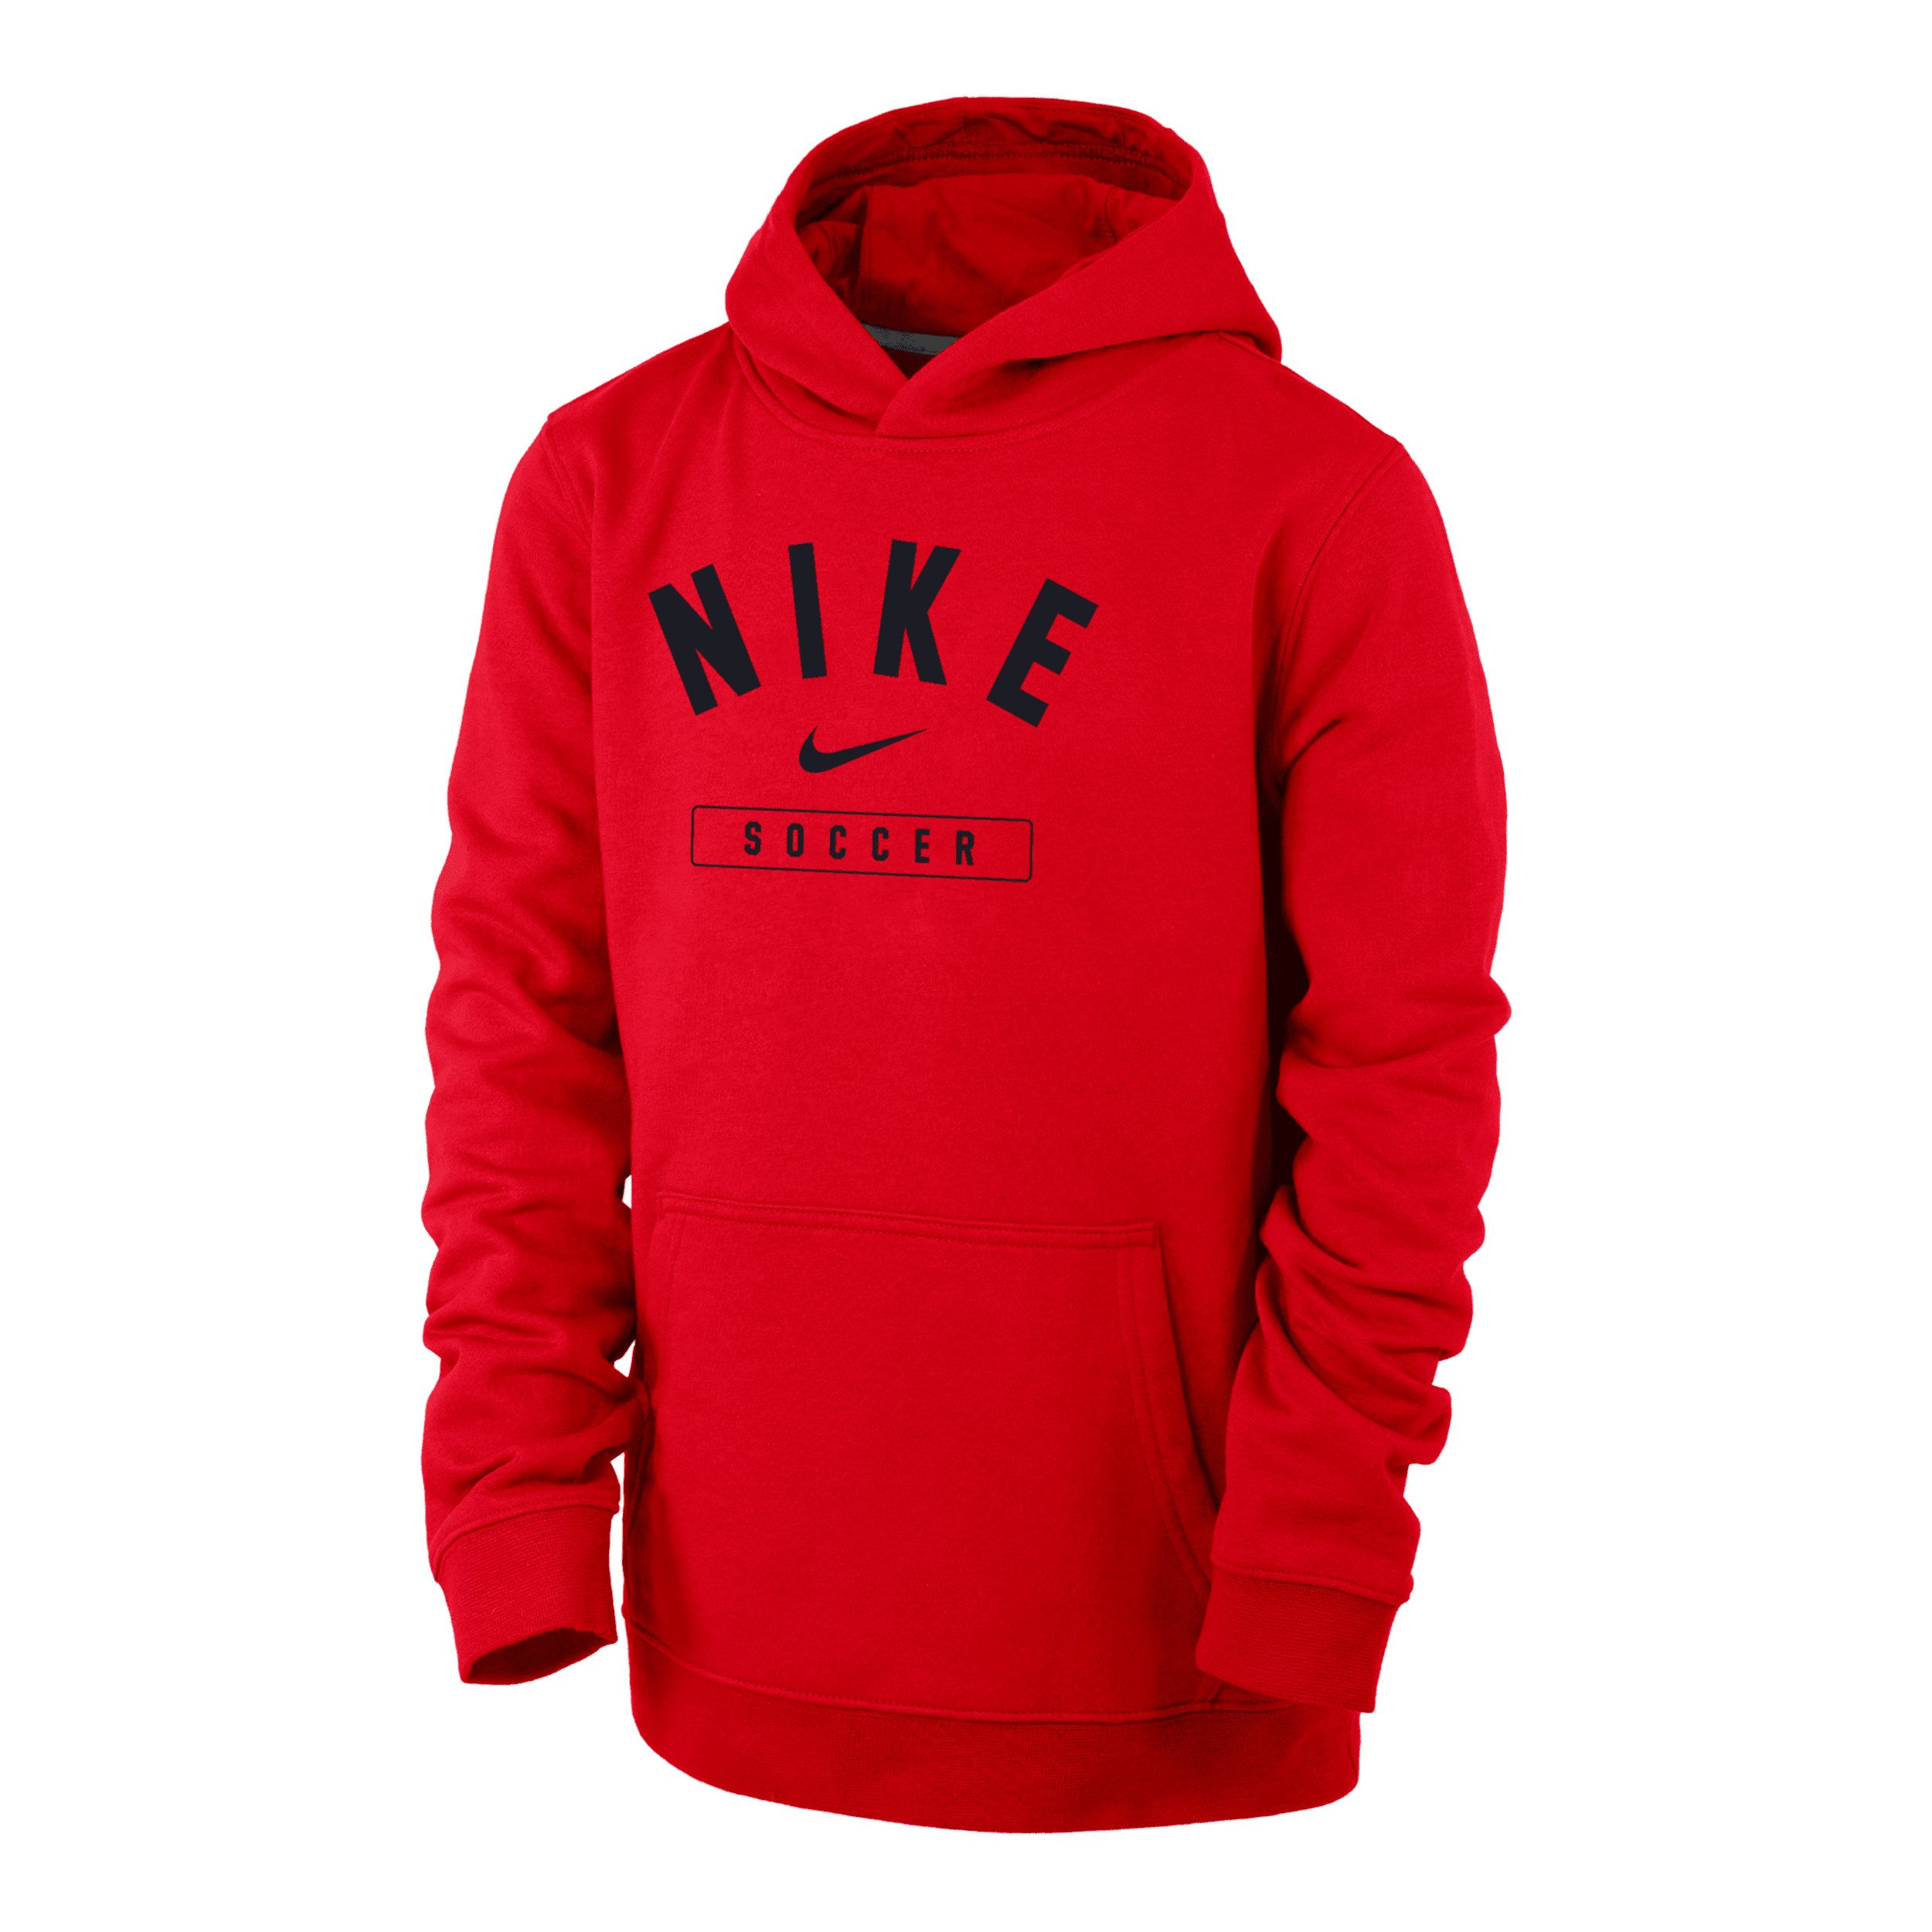 Nike Soccer Big Kids' (boys') Pullover Hoodie In Red